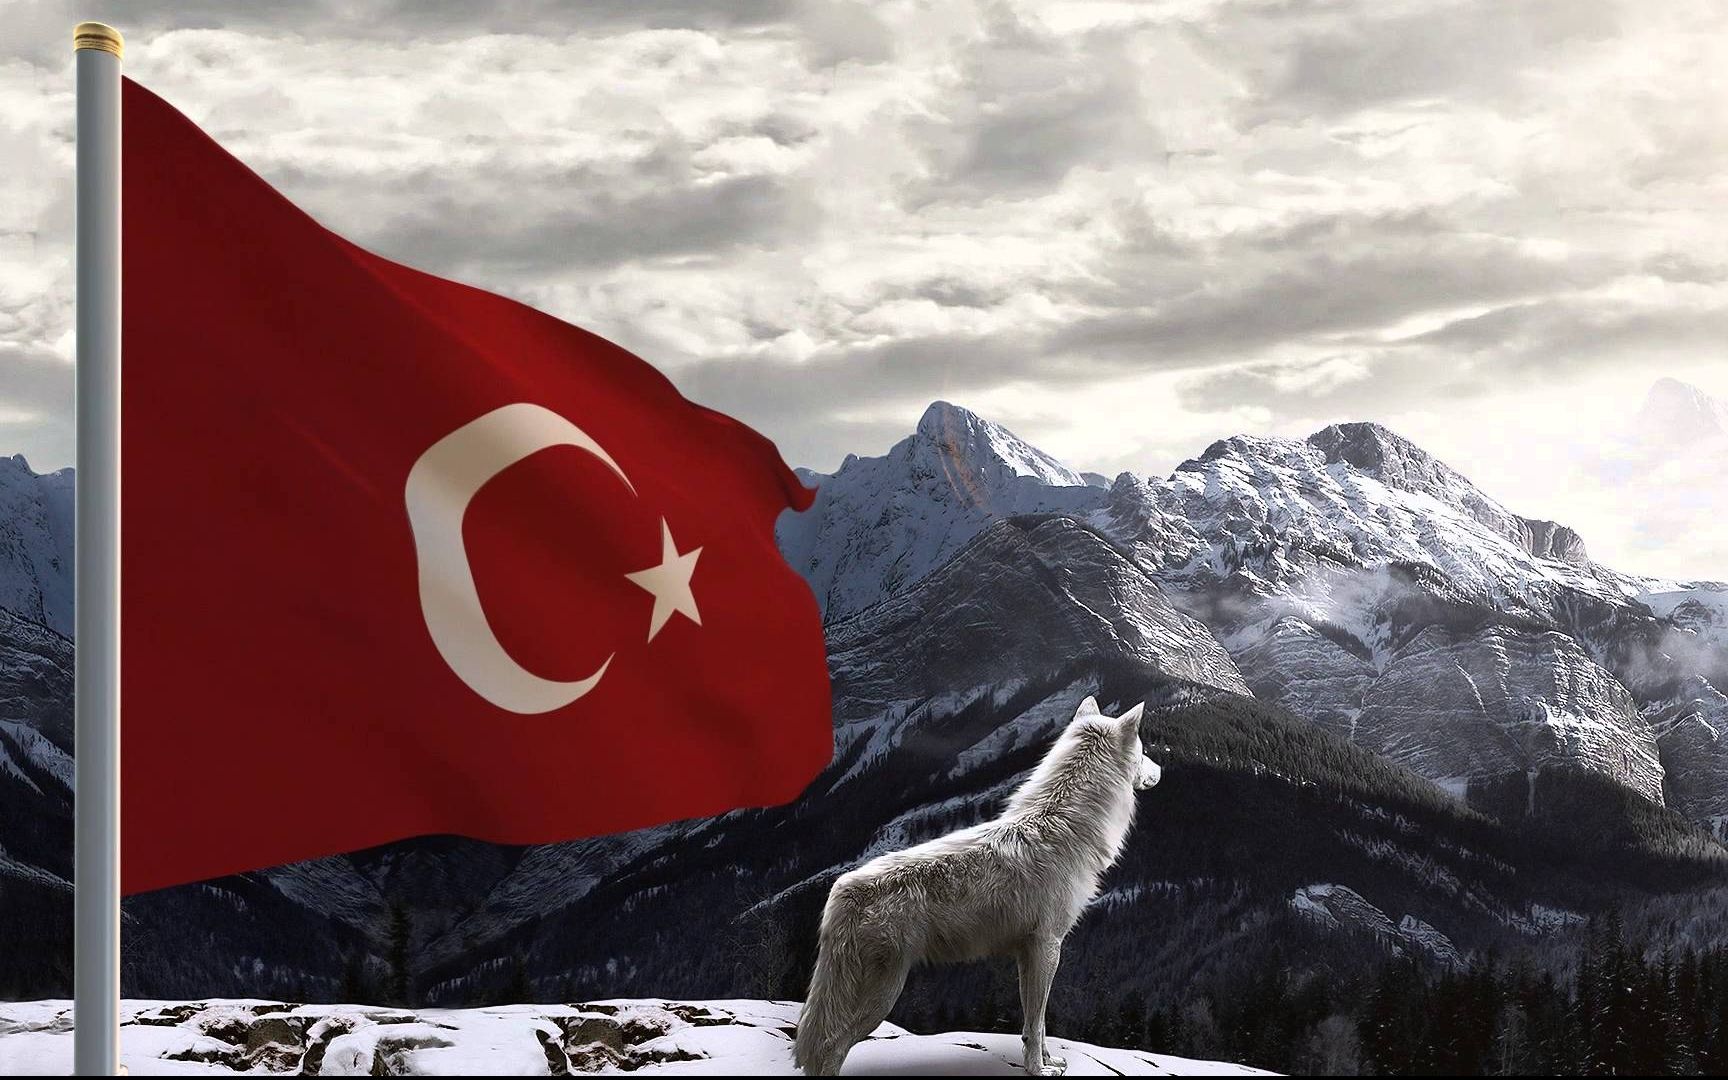 Kurt resimli turk bayraklari